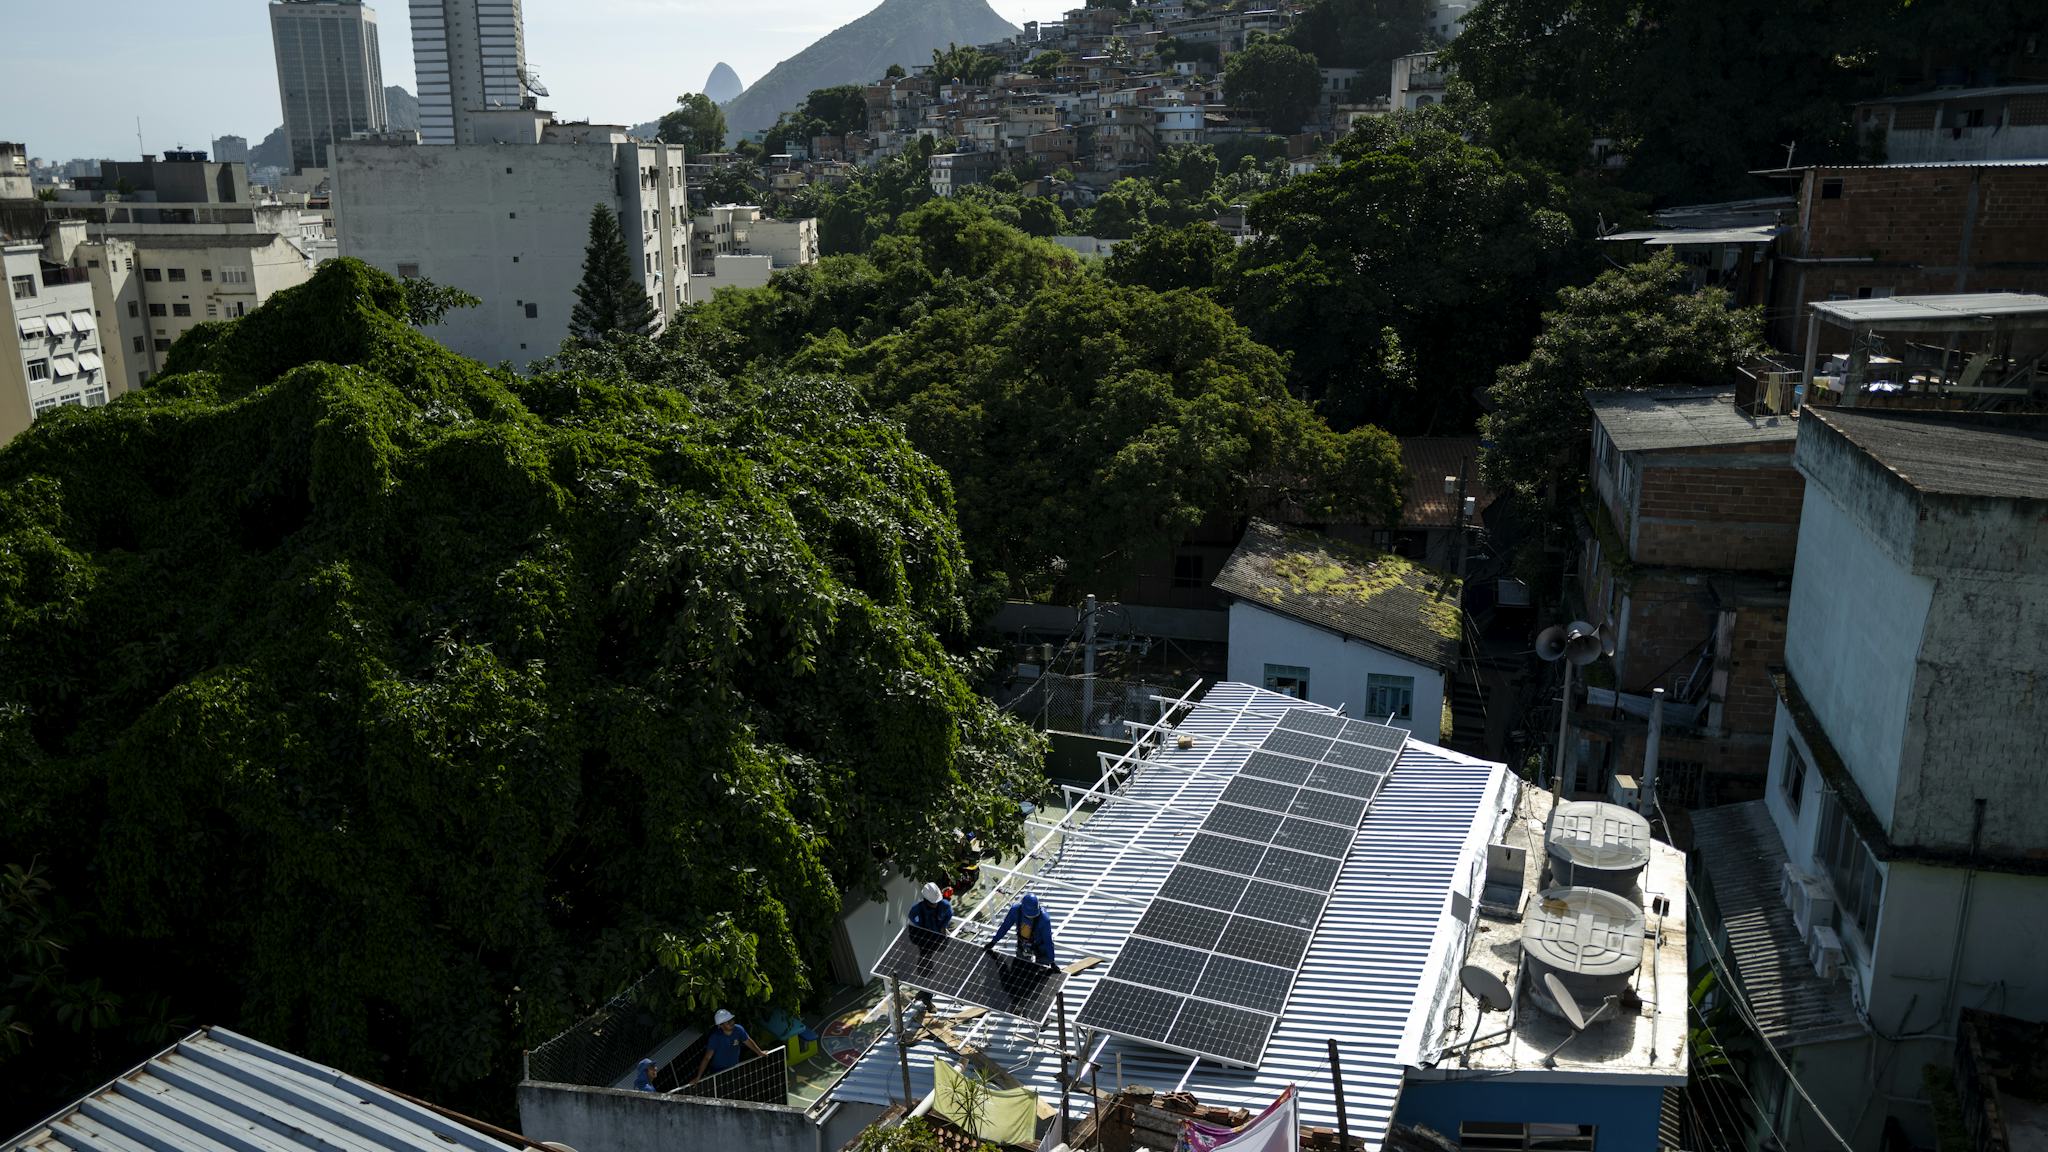 Installation av solpaneler på ett tak i en tätort.